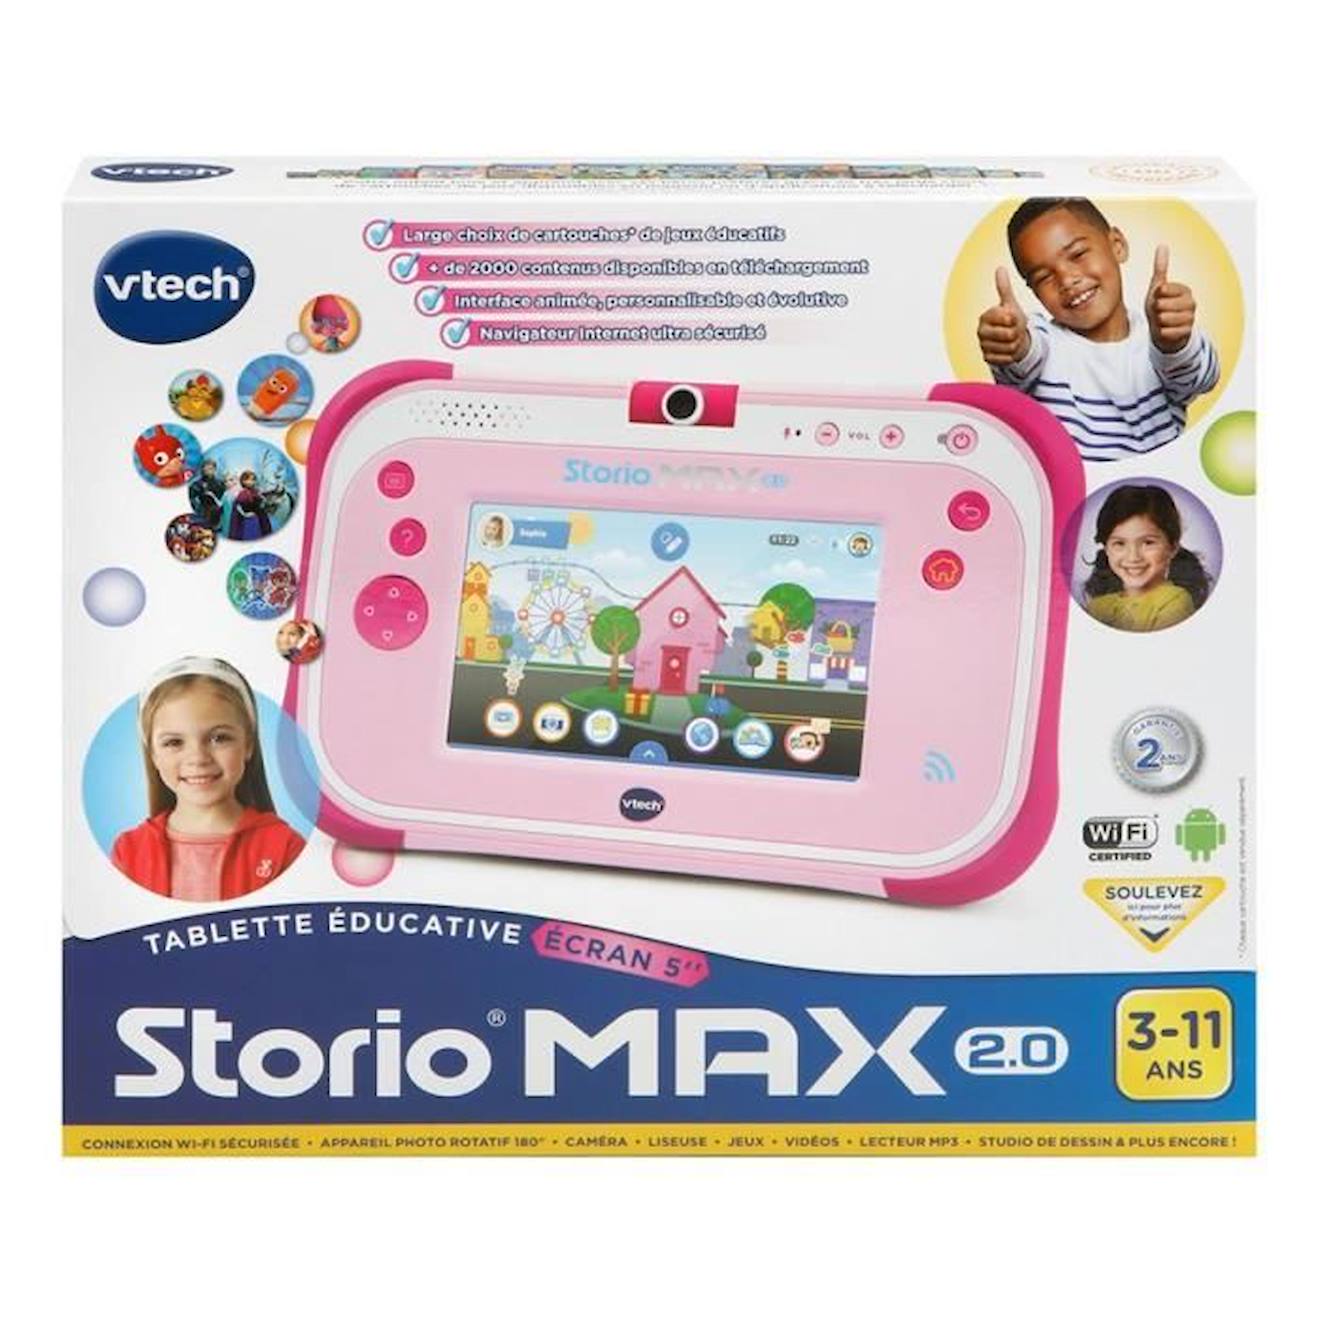 Storio 2 - La tablette éducative des enfants